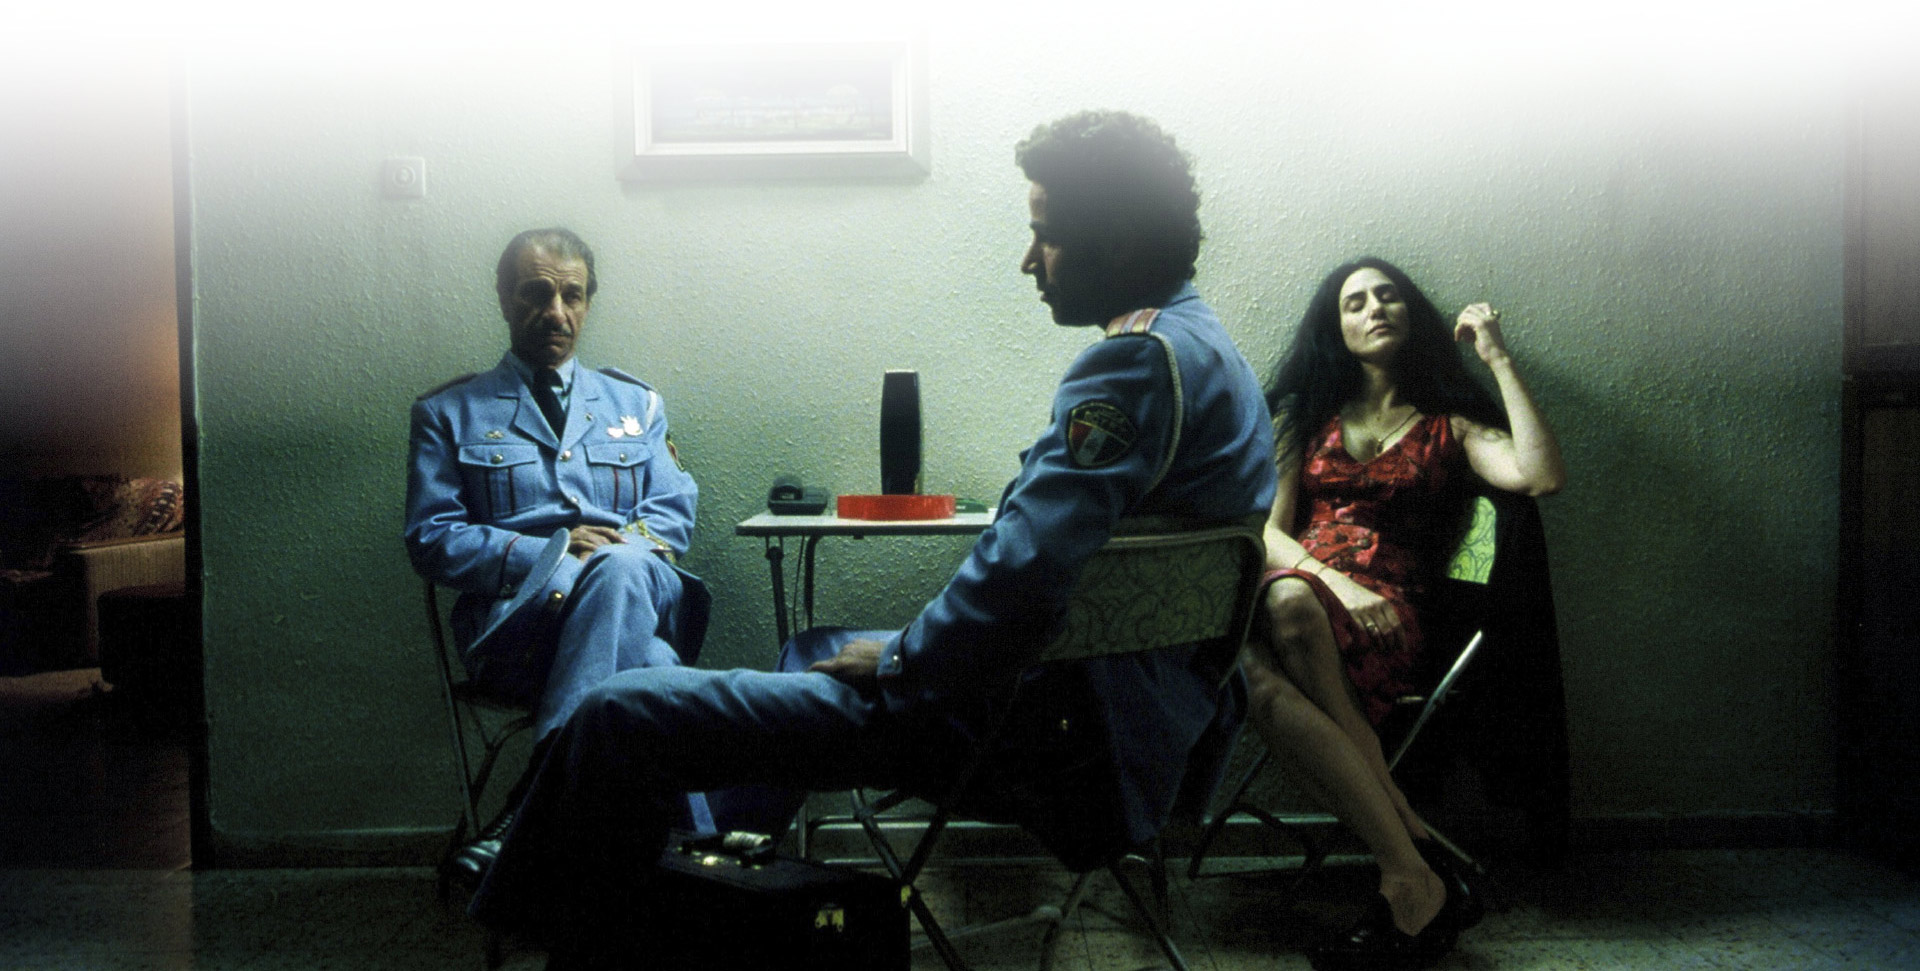 רונית אלקבץ, סאלח בכרי (במרכז) וששון גבאי, צילום: מאיר רג'ואן